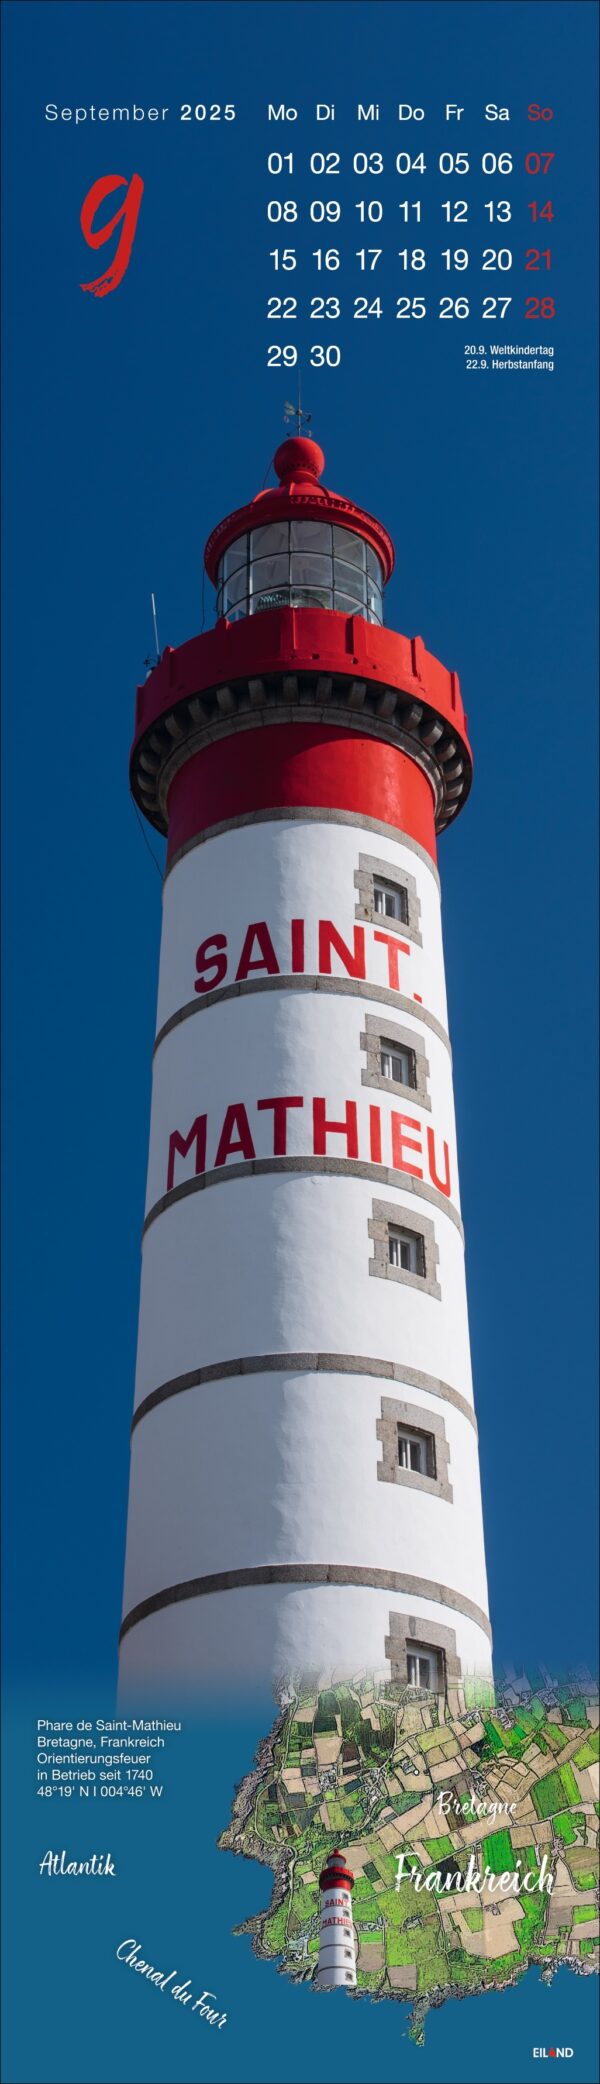 Ein vertikales Poster, das den LongEiland - Kalender 2025 vor einem Himmelshintergrund zeigt. Es zeigt einen großen weißen Leuchtturm mit roten Verzierungen und Streifen namens „Saint Mathieu“ vor einem blauen